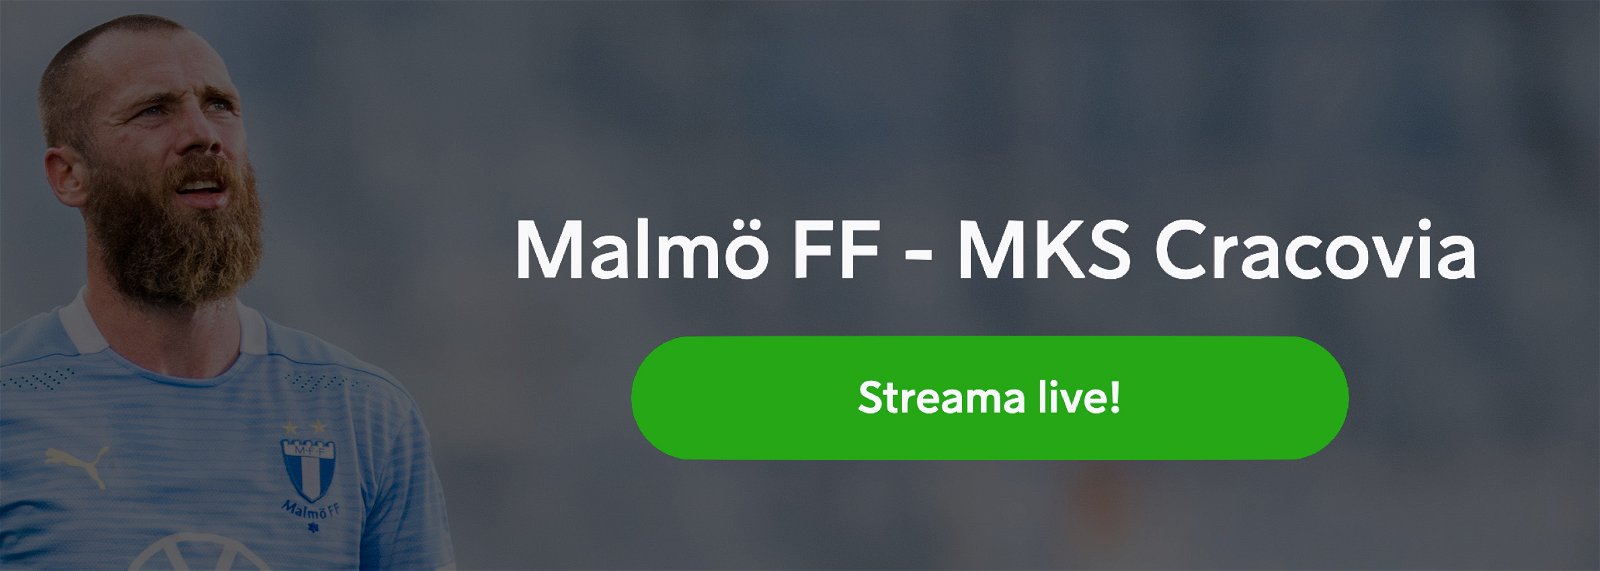 Malmö FF MKS Cracovia stream 2020